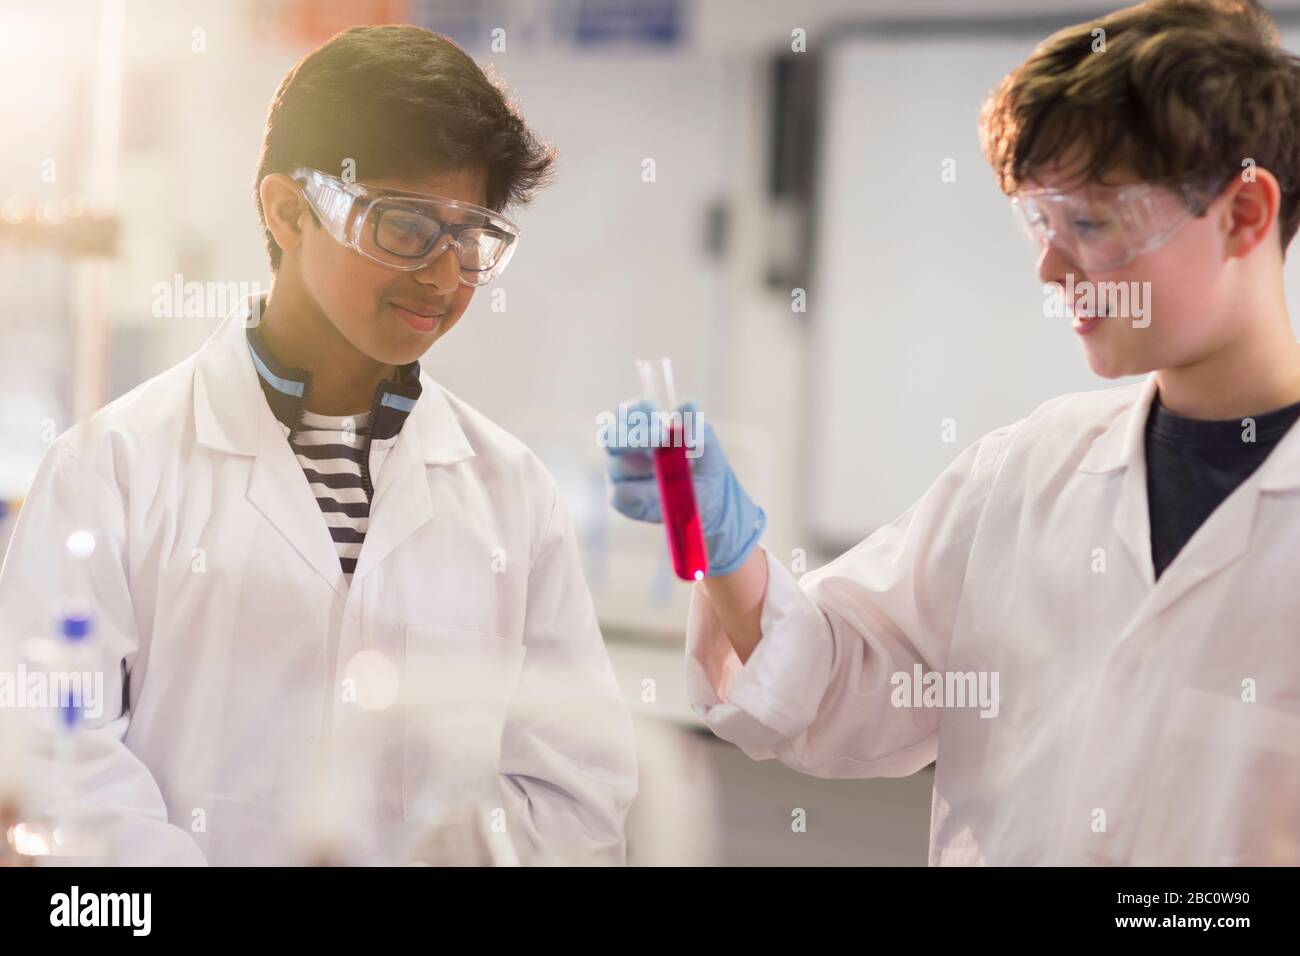 Ragazzi studenti che esaminano il liquido in provetta, conducendo esperimenti scientifici in classe di laboratorio Foto Stock